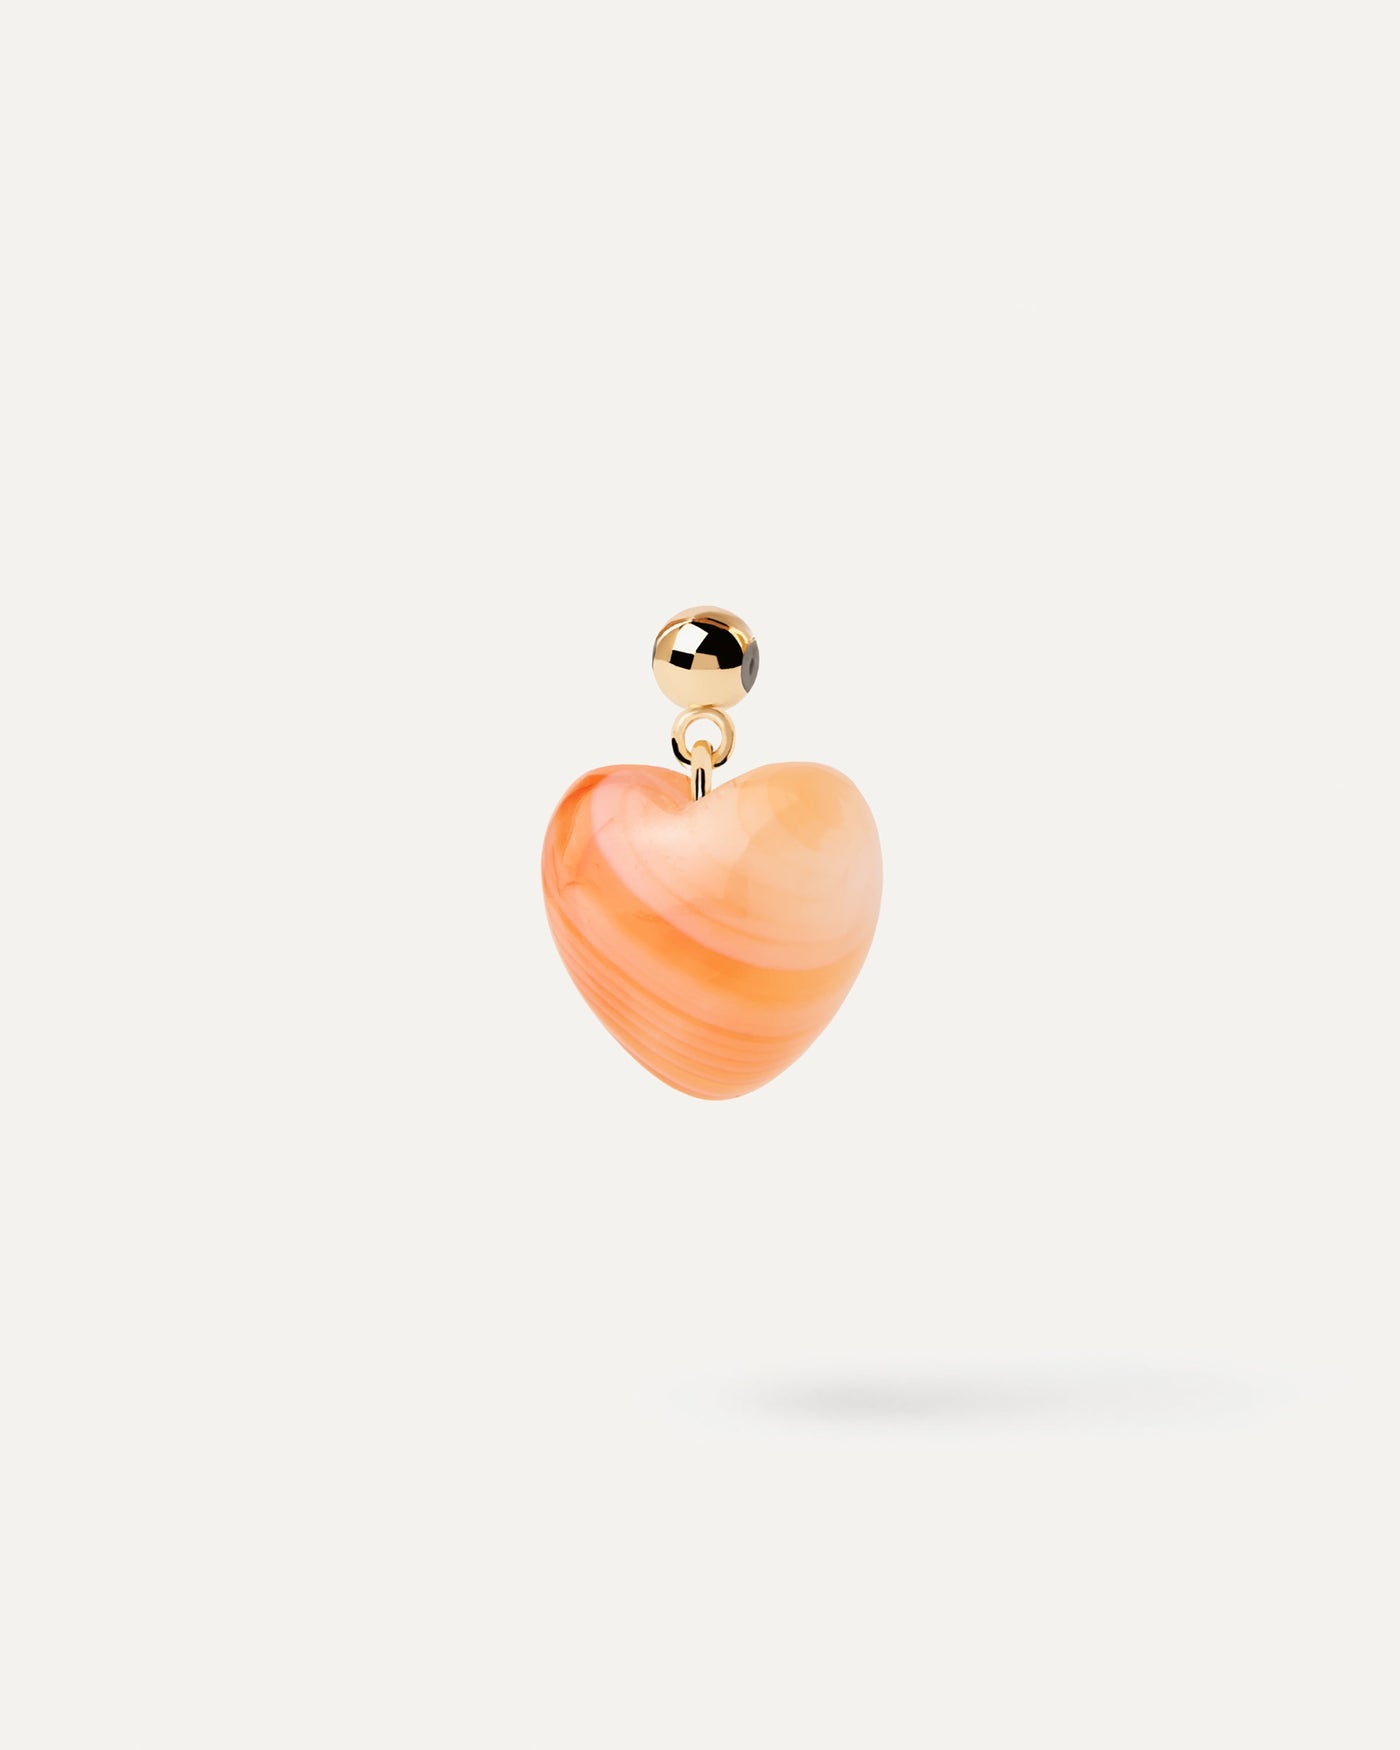 Oranger Achat Herz Charm. Charm herz aus orange Stein für Halskette oder Armband. Erhalten Sie die neuesten Produkte von PDPAOLA. Geben Sie Ihre Bestellung sicher auf und erhalten Sie diesen Bestseller.